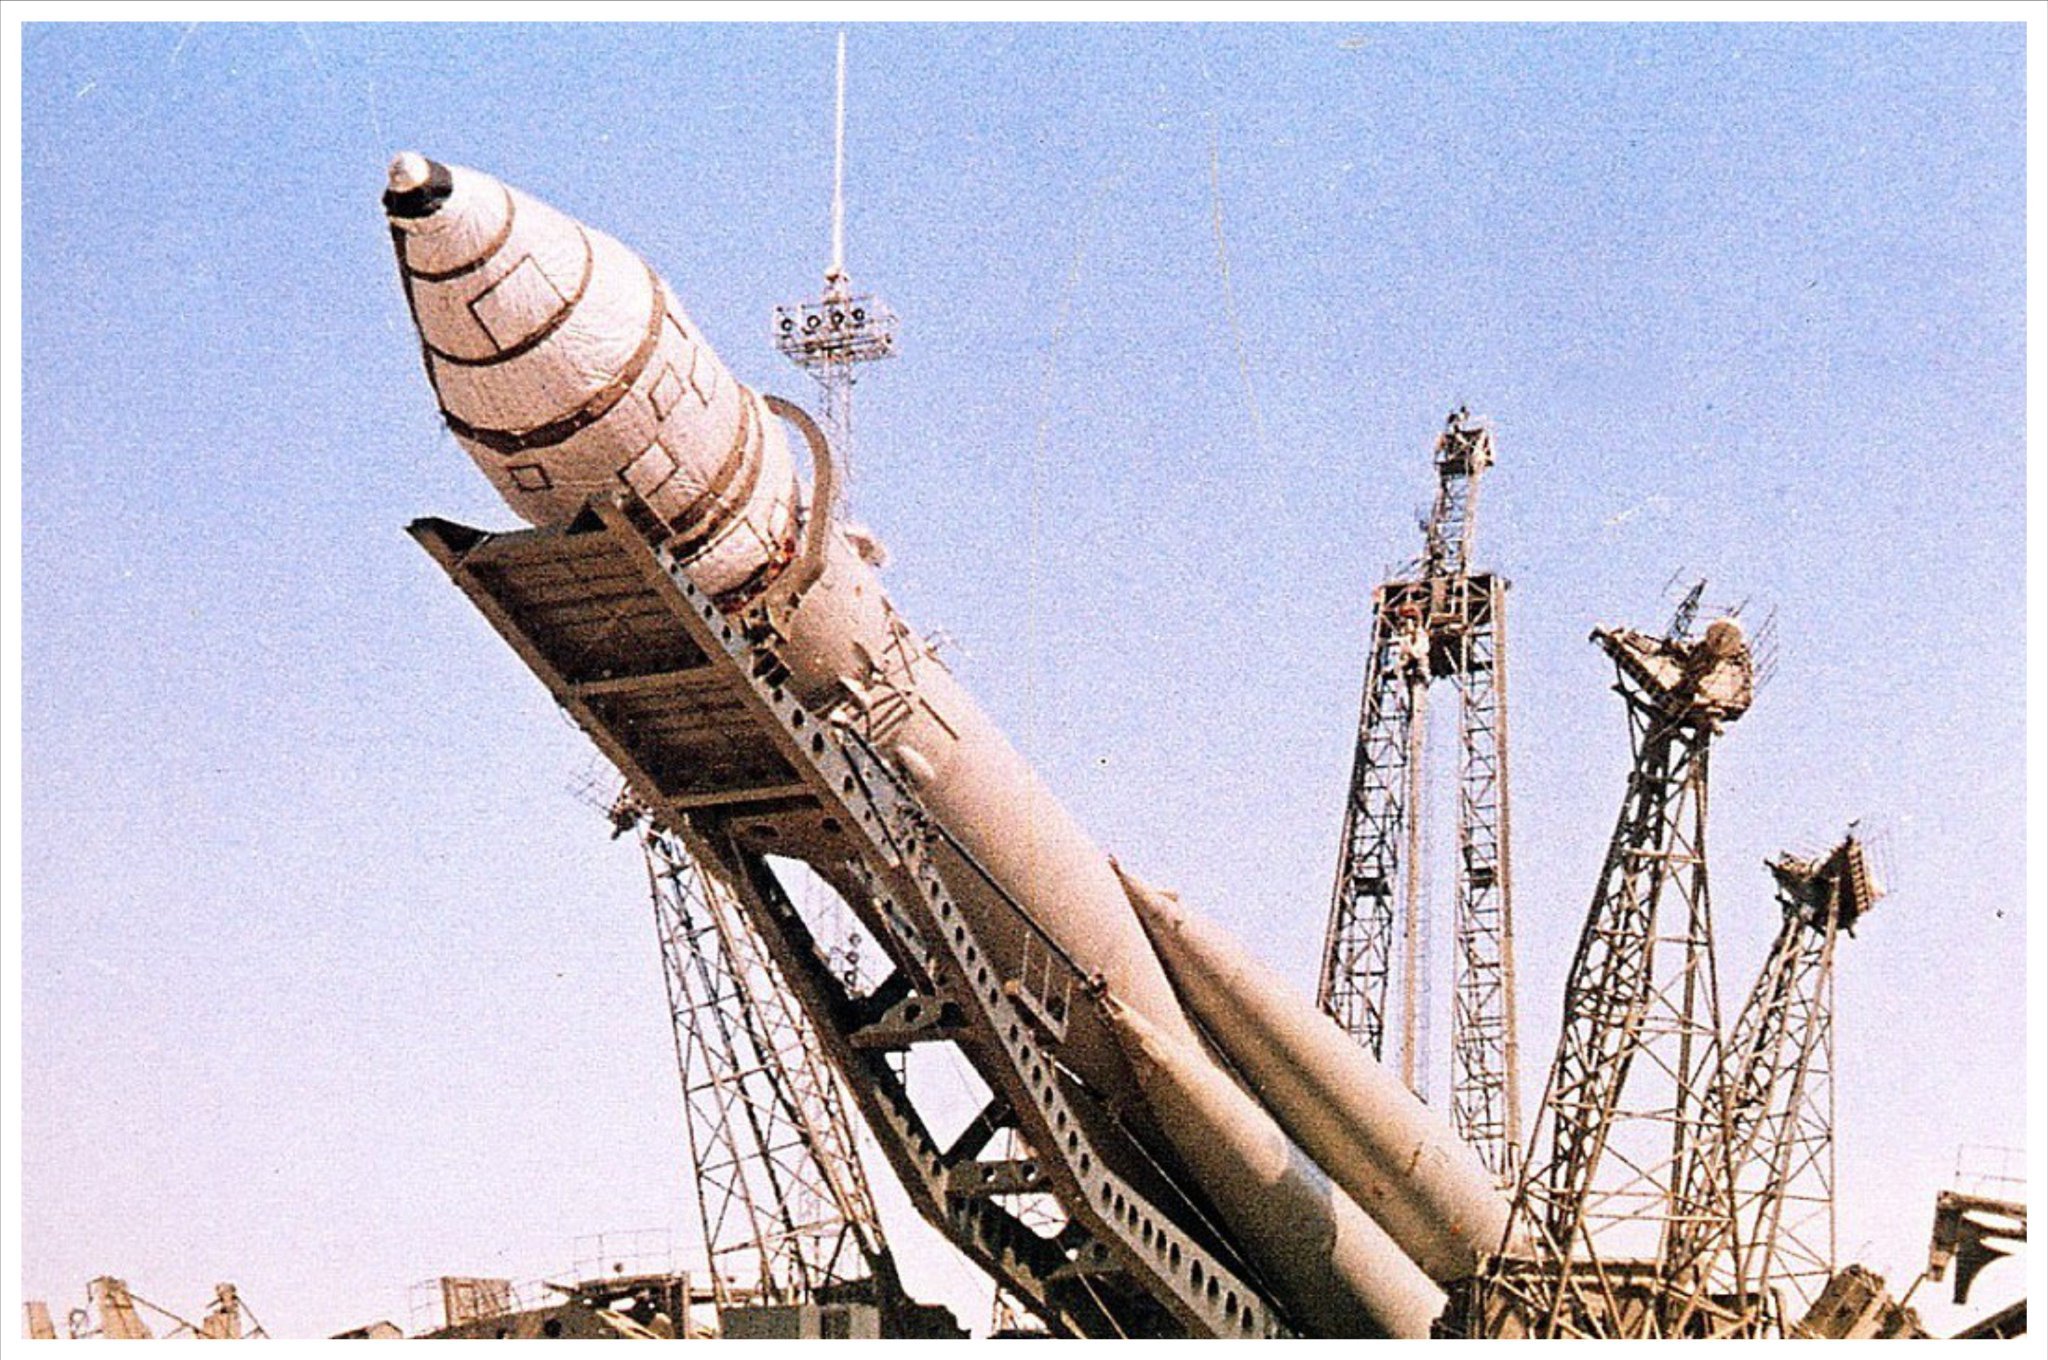 Какое название ракеты гагарина. Байконур Восток 1 1961. Космический корабль Восток Юрия Гагарина 1961. Космический корабль Гагарина Восток 1. Байконур Восток 1 Гагарин.